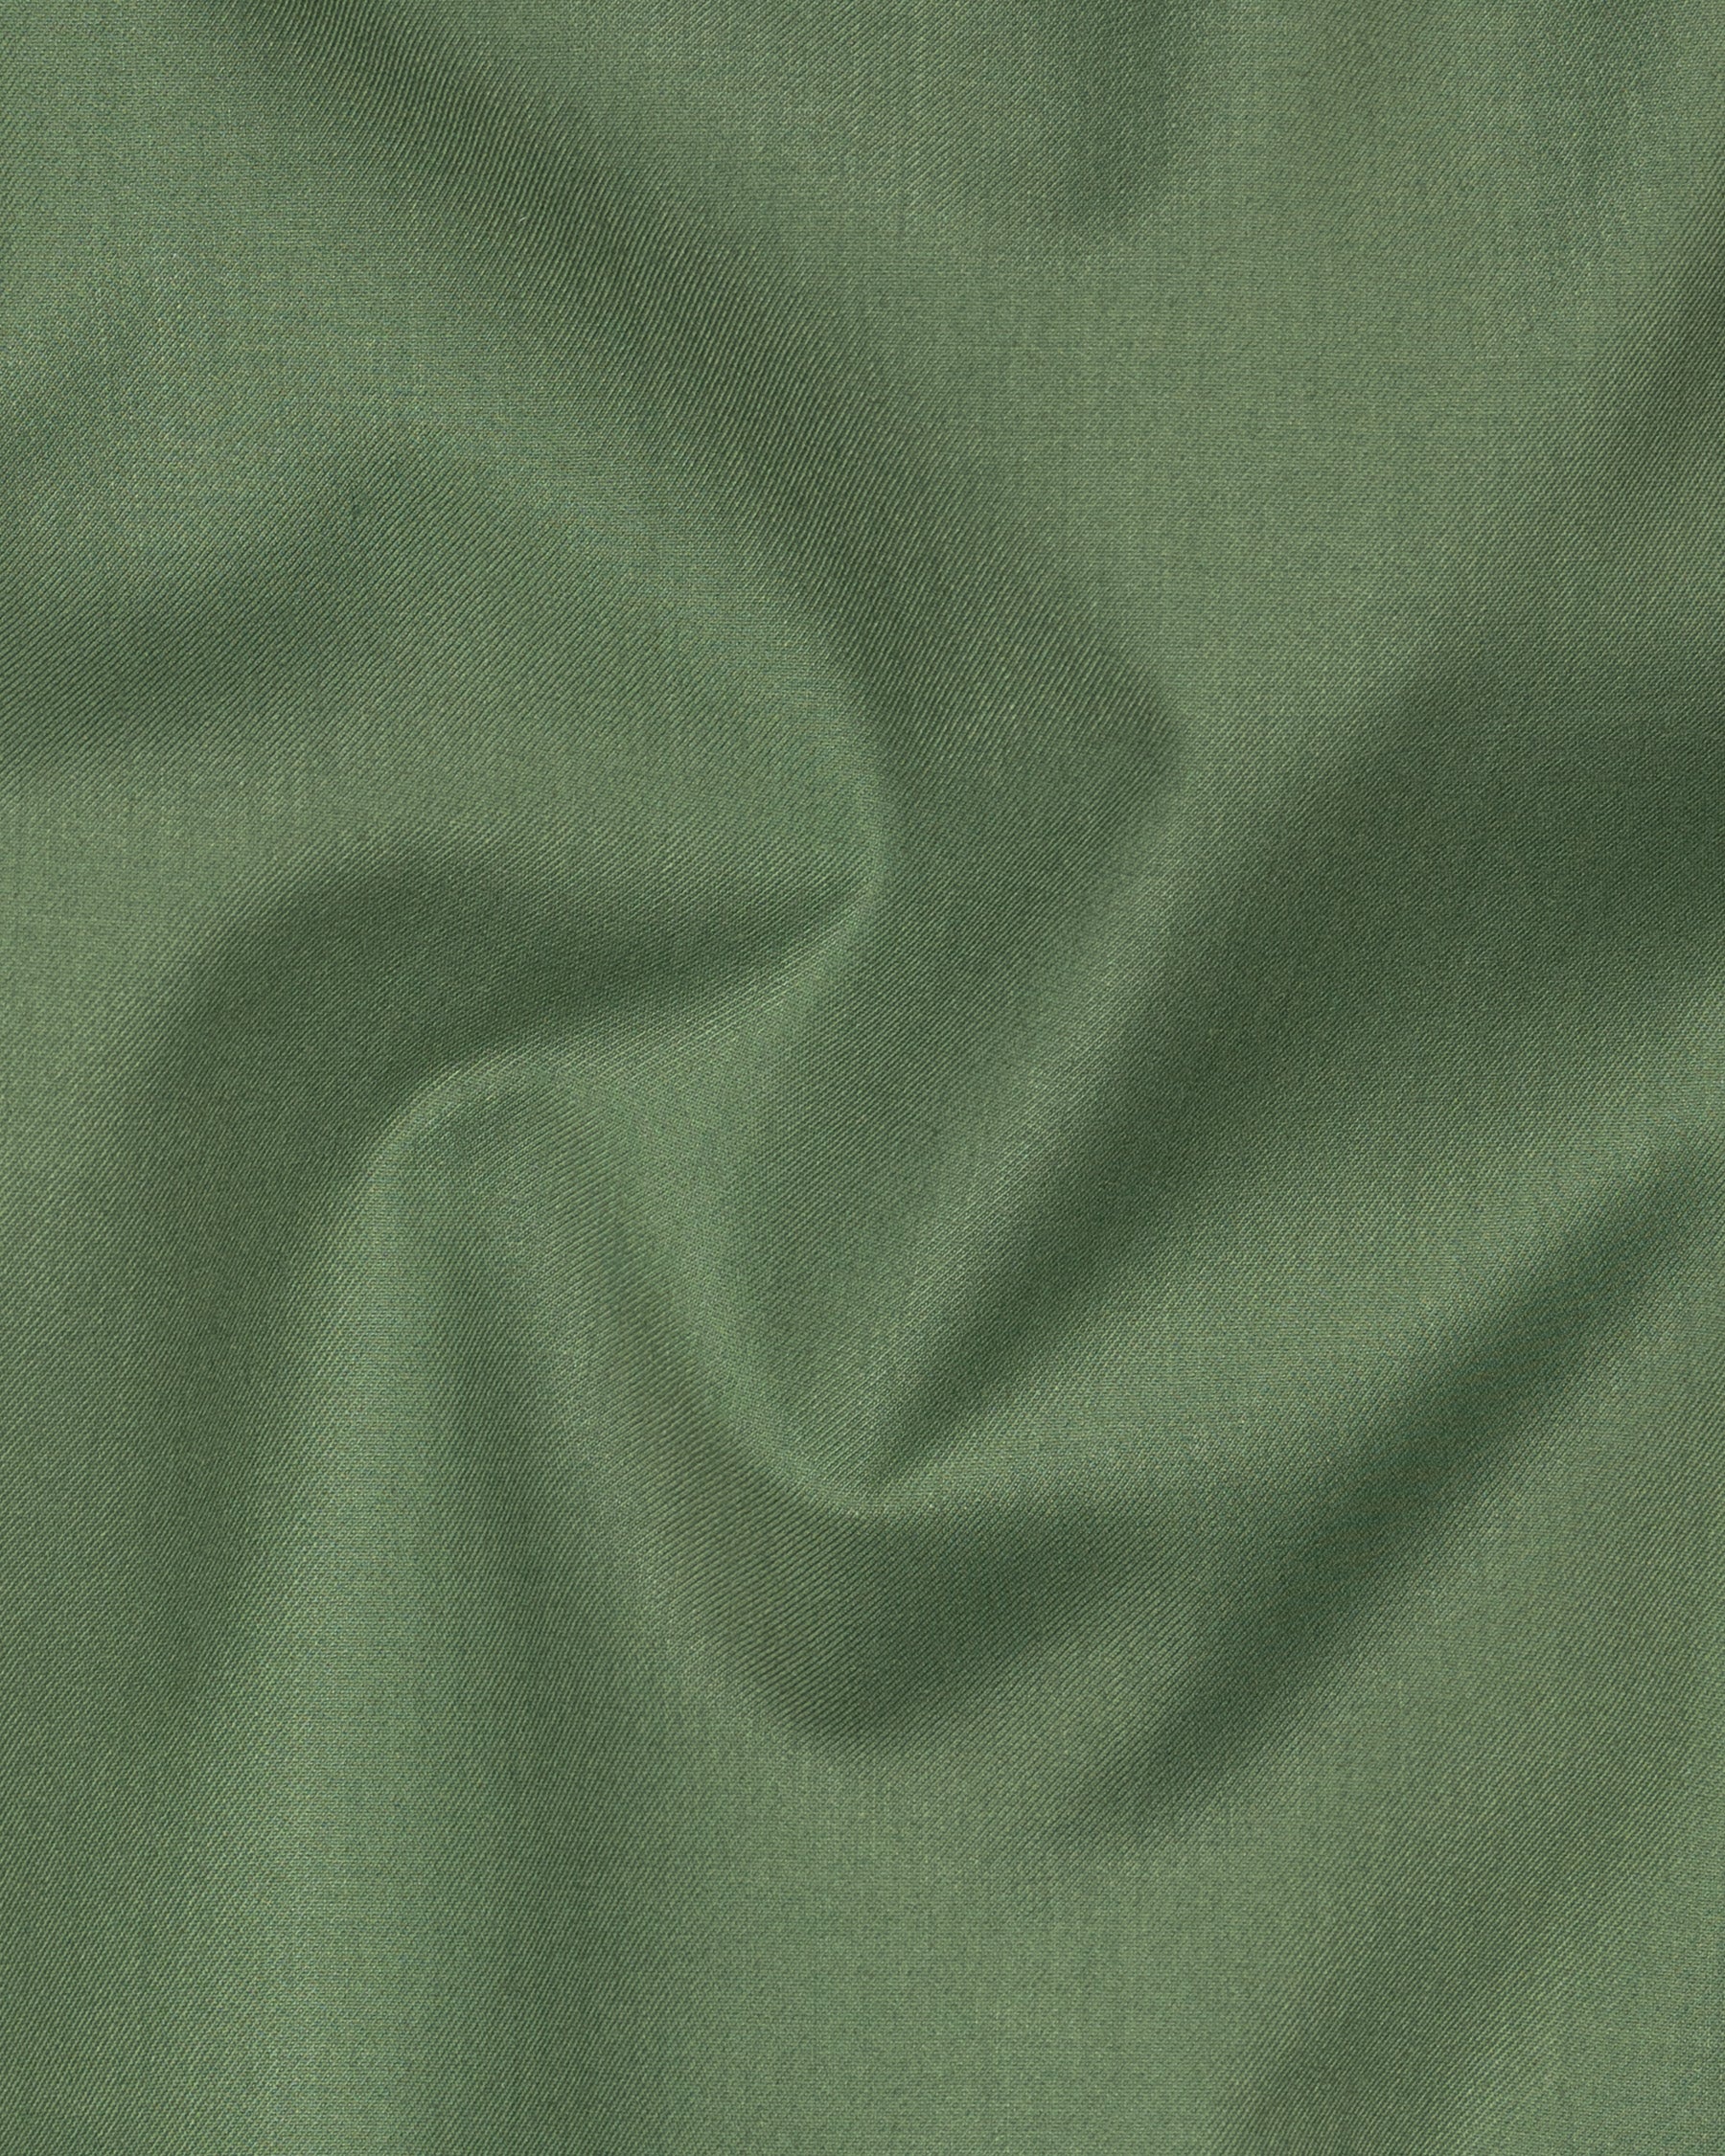 Highland Green Woolrich Pant T1519-28, T1519-30, T1519-32, T1519-34, T1519-36, T1519-38, T1519-40, T1519-42, T1519-44